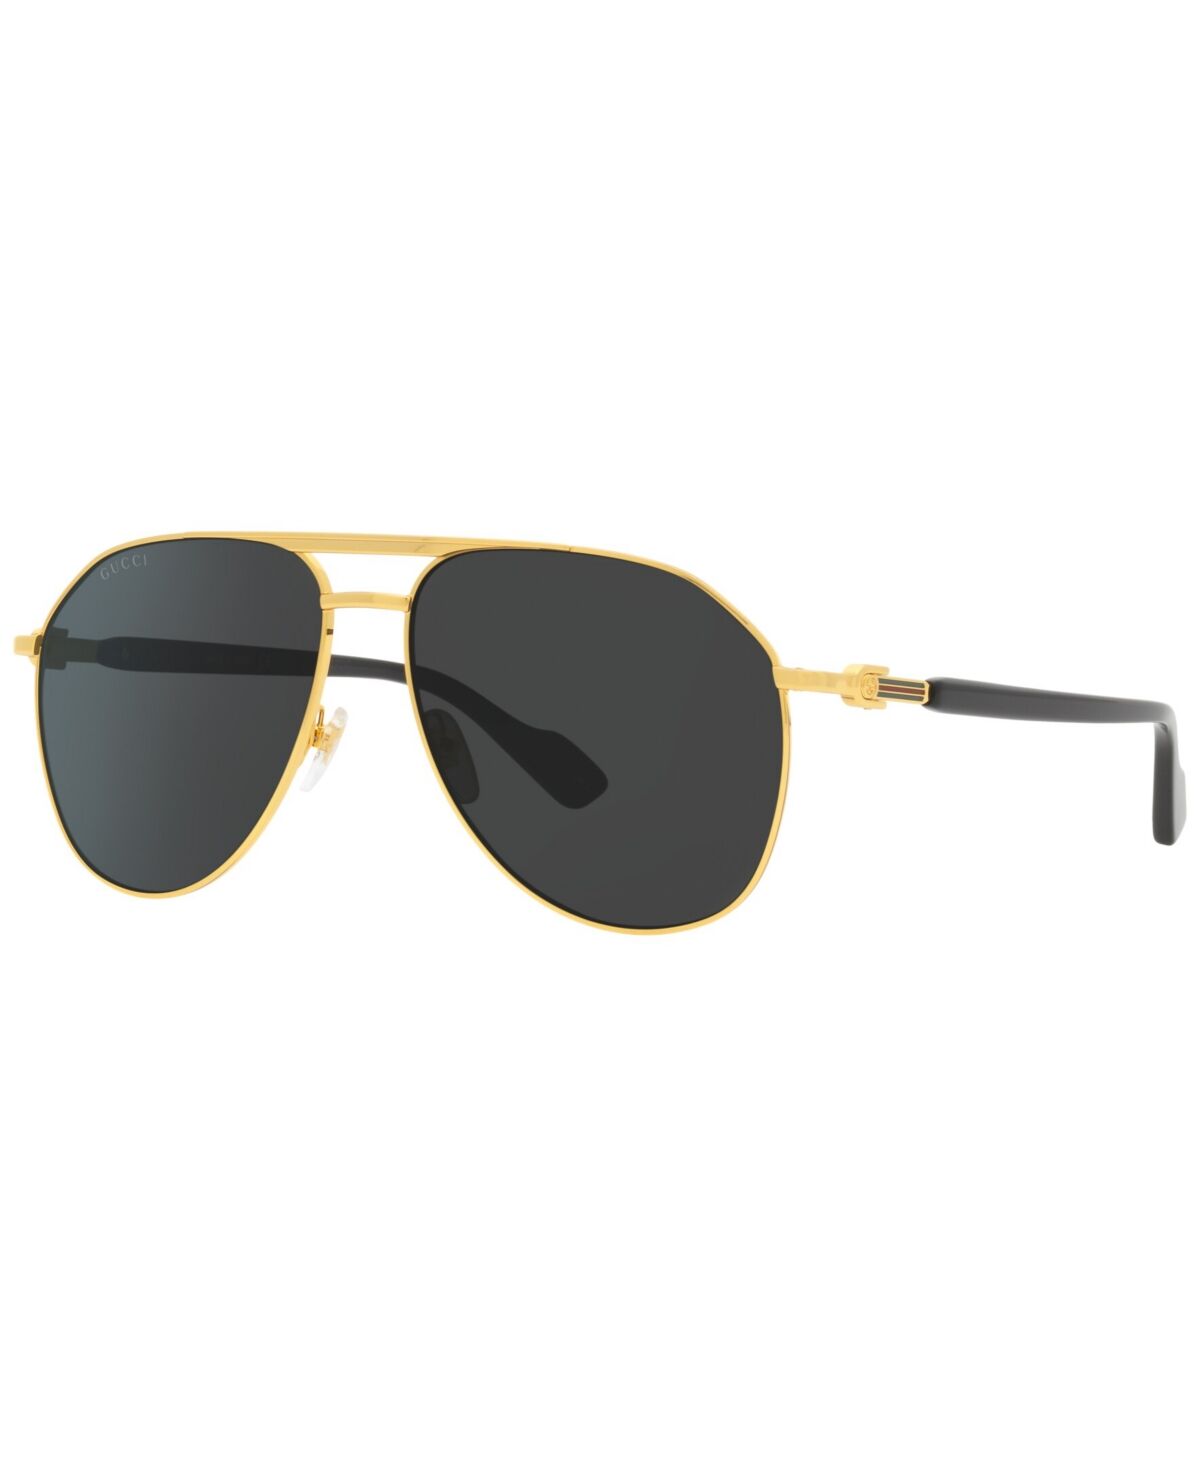 Gucci Men's Sunglasses, GC001938 - Gold-Tone